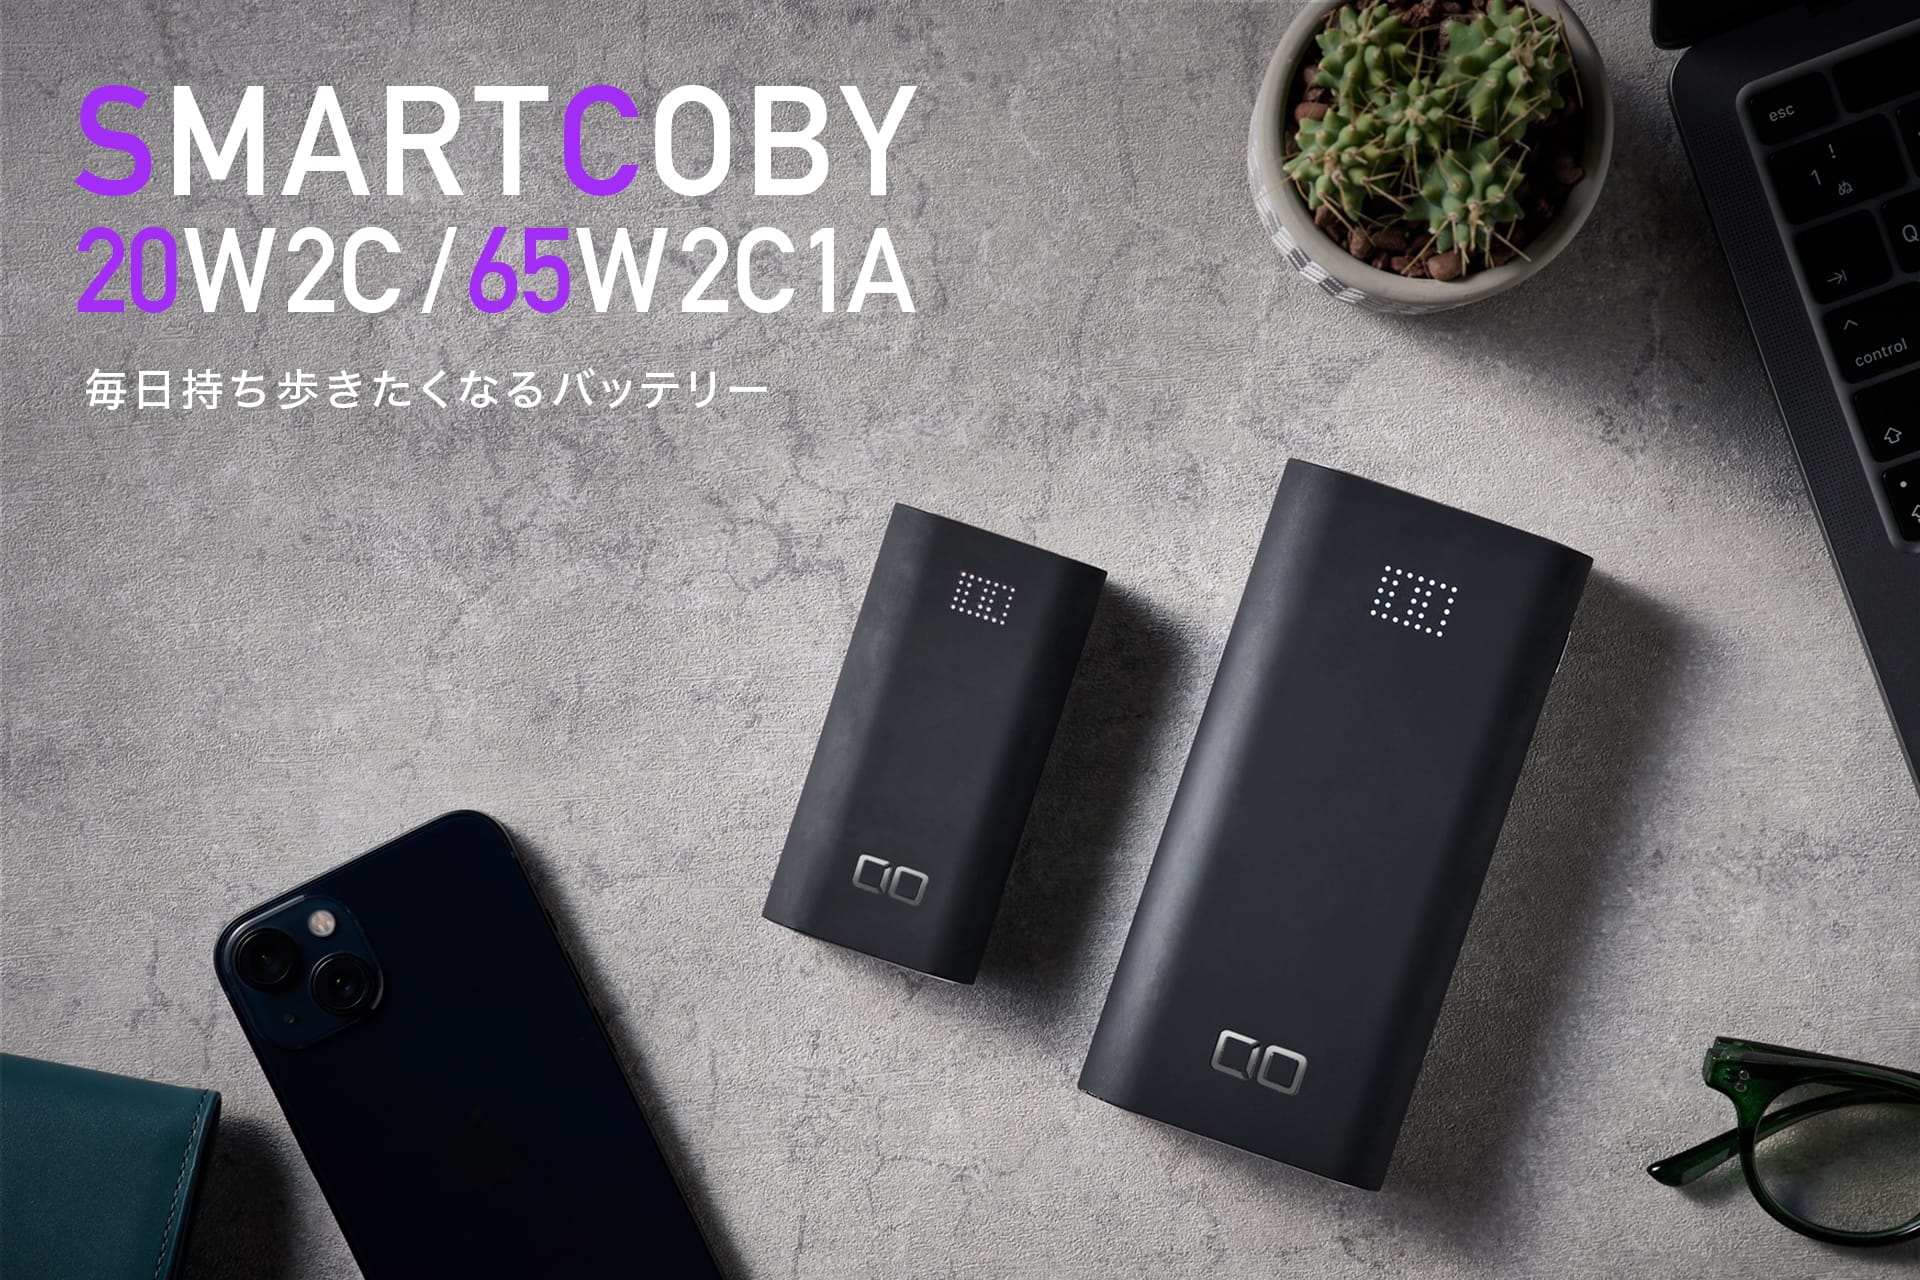 CIO、モバイルバッテリー「SMARTCOBY」の新モデル発売